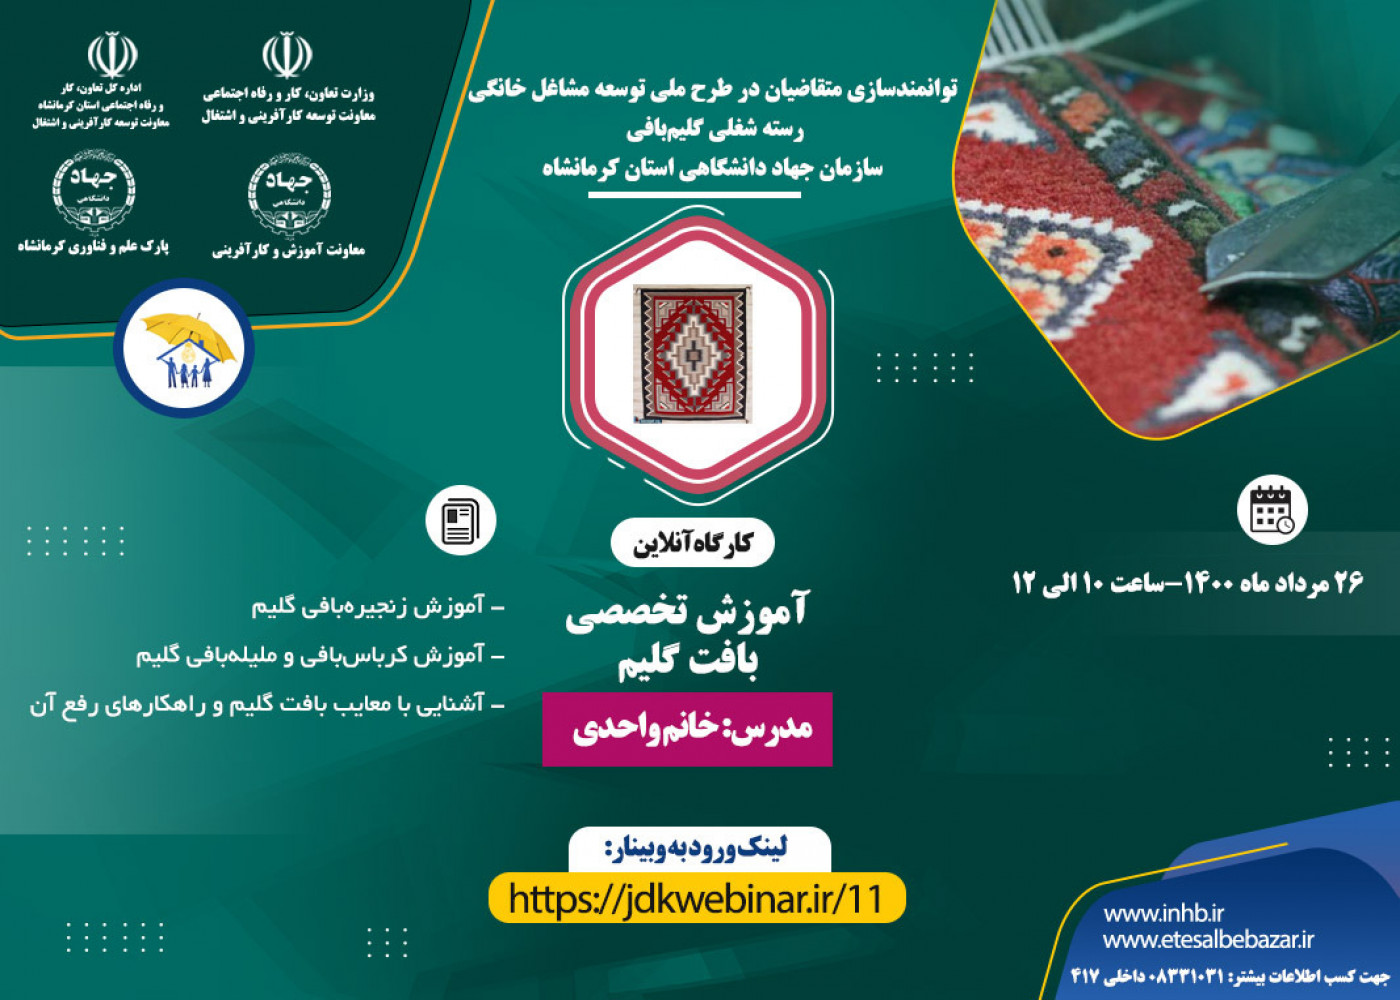 برگزاری دومین وبینار آموزشی رسته شغلی گلیم بافی- سازمان جهاد دانشگاهی استان کرمانشاه